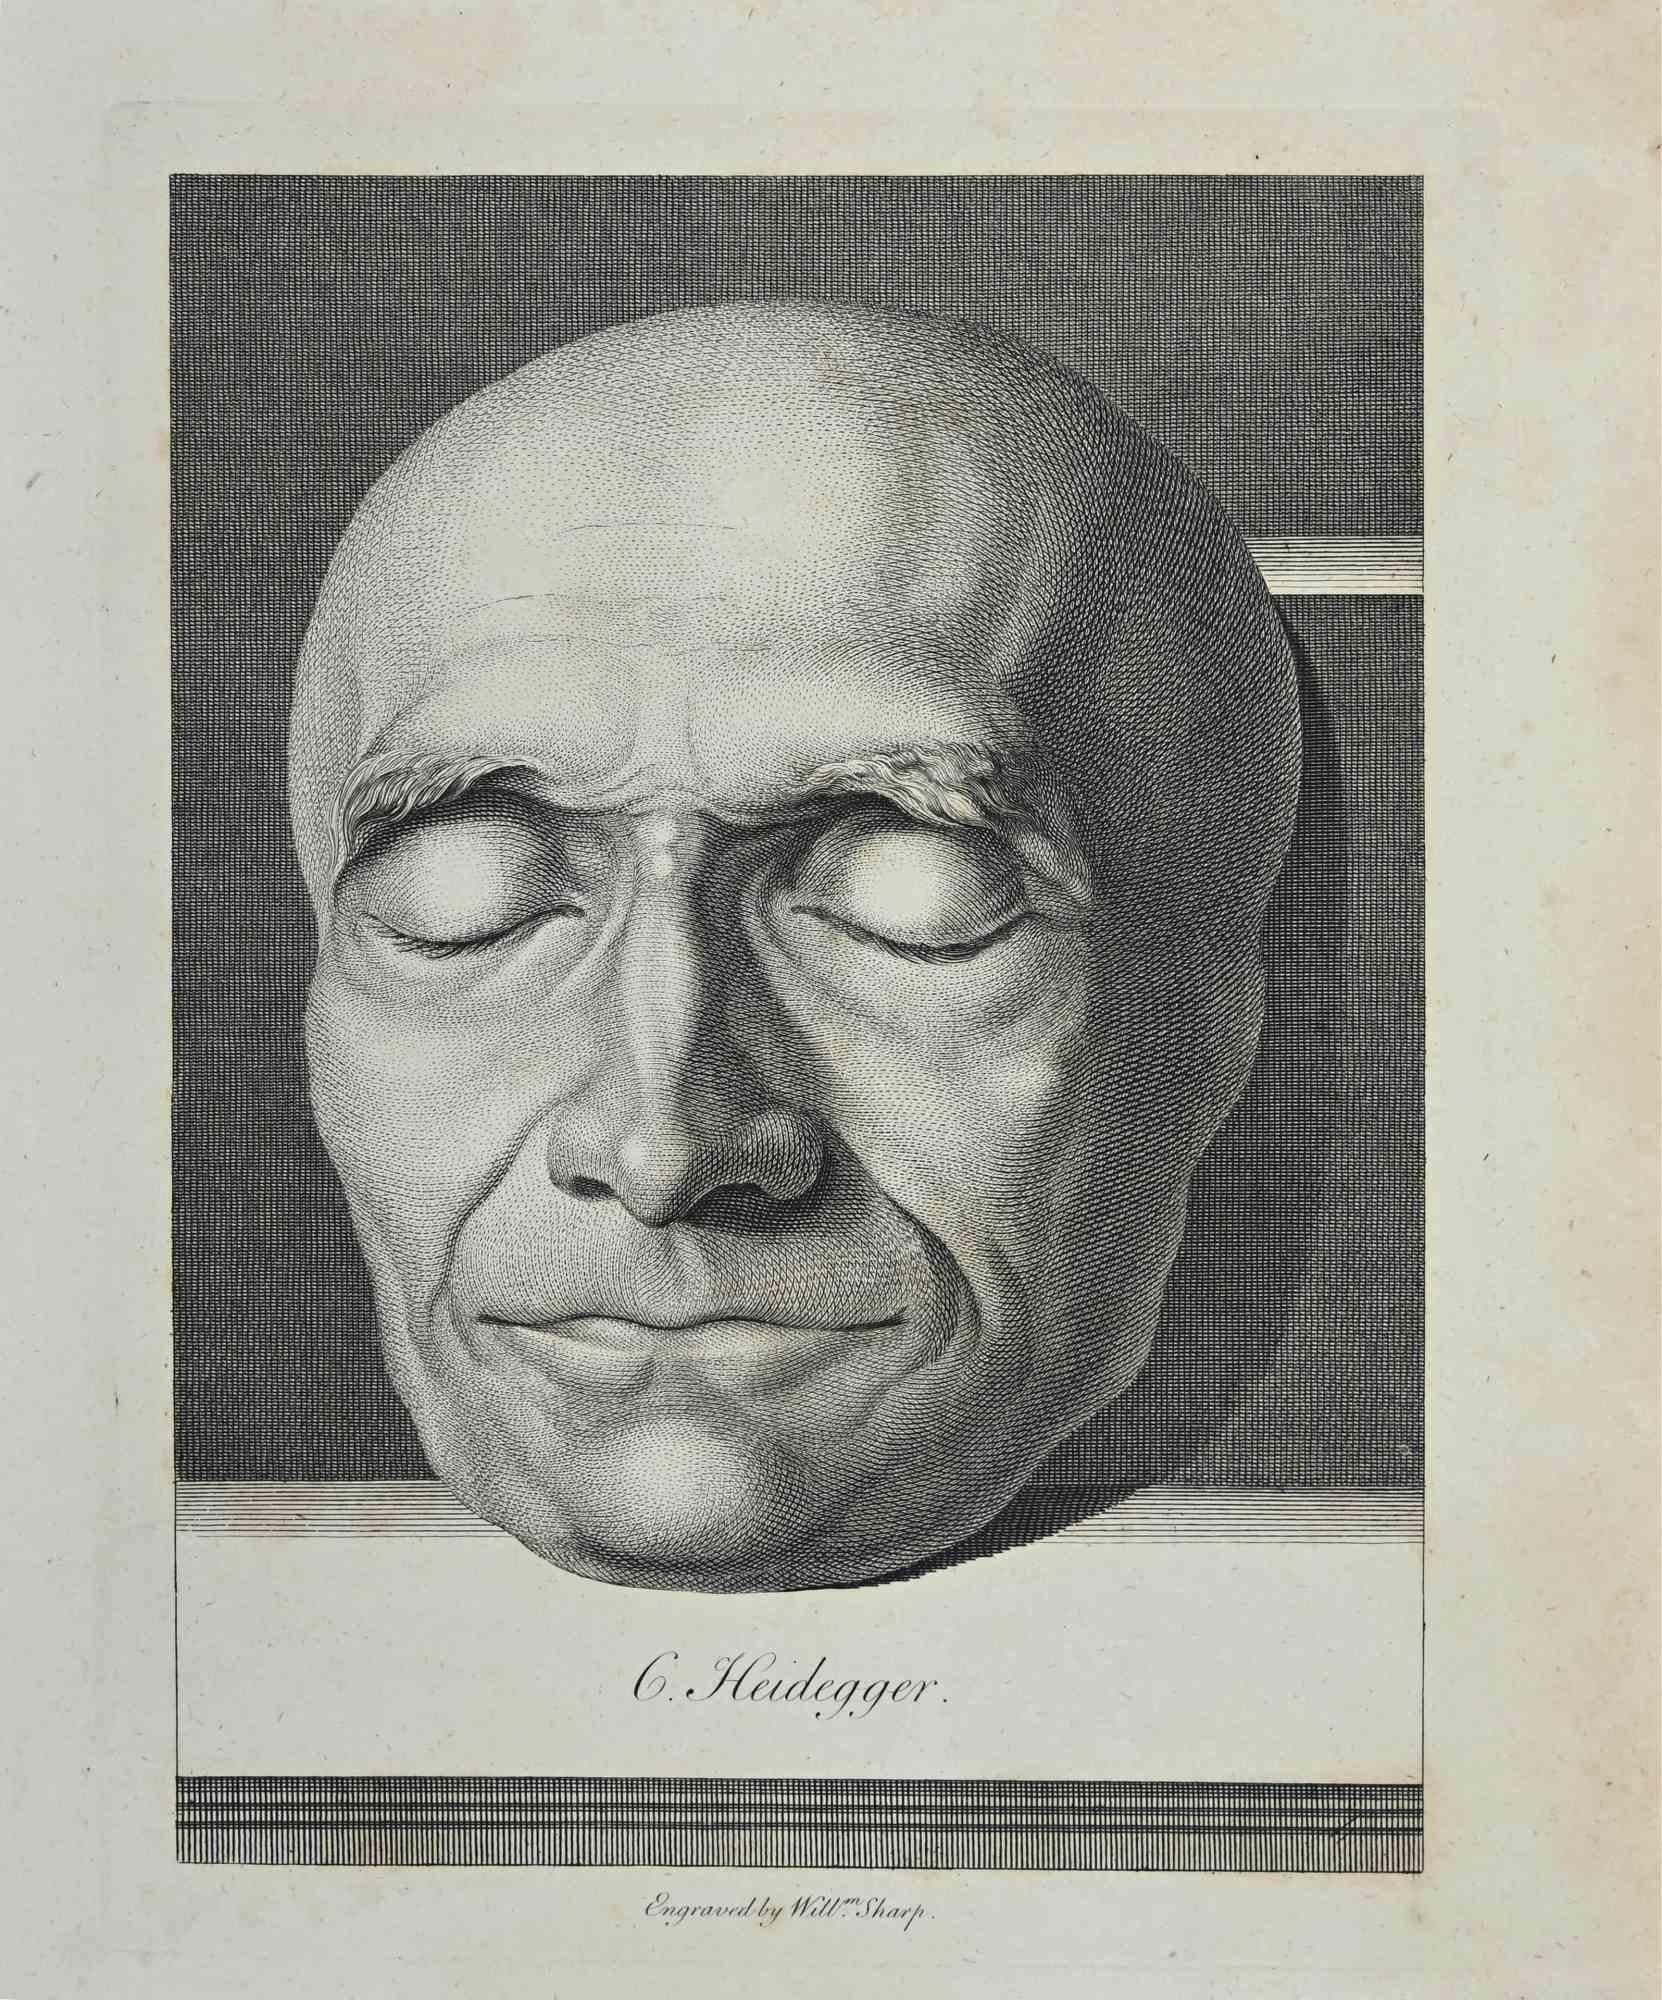 Portrait de G. Heidegger est une œuvre d'art originale réalisée par William Sharp (1749 - 1824).

Gravure originale de J.C. Essais de Lavater sur la physiognomonie, destinés à promouvoir la connaissance et l'amour de l'humanité", Londres, Bensley,